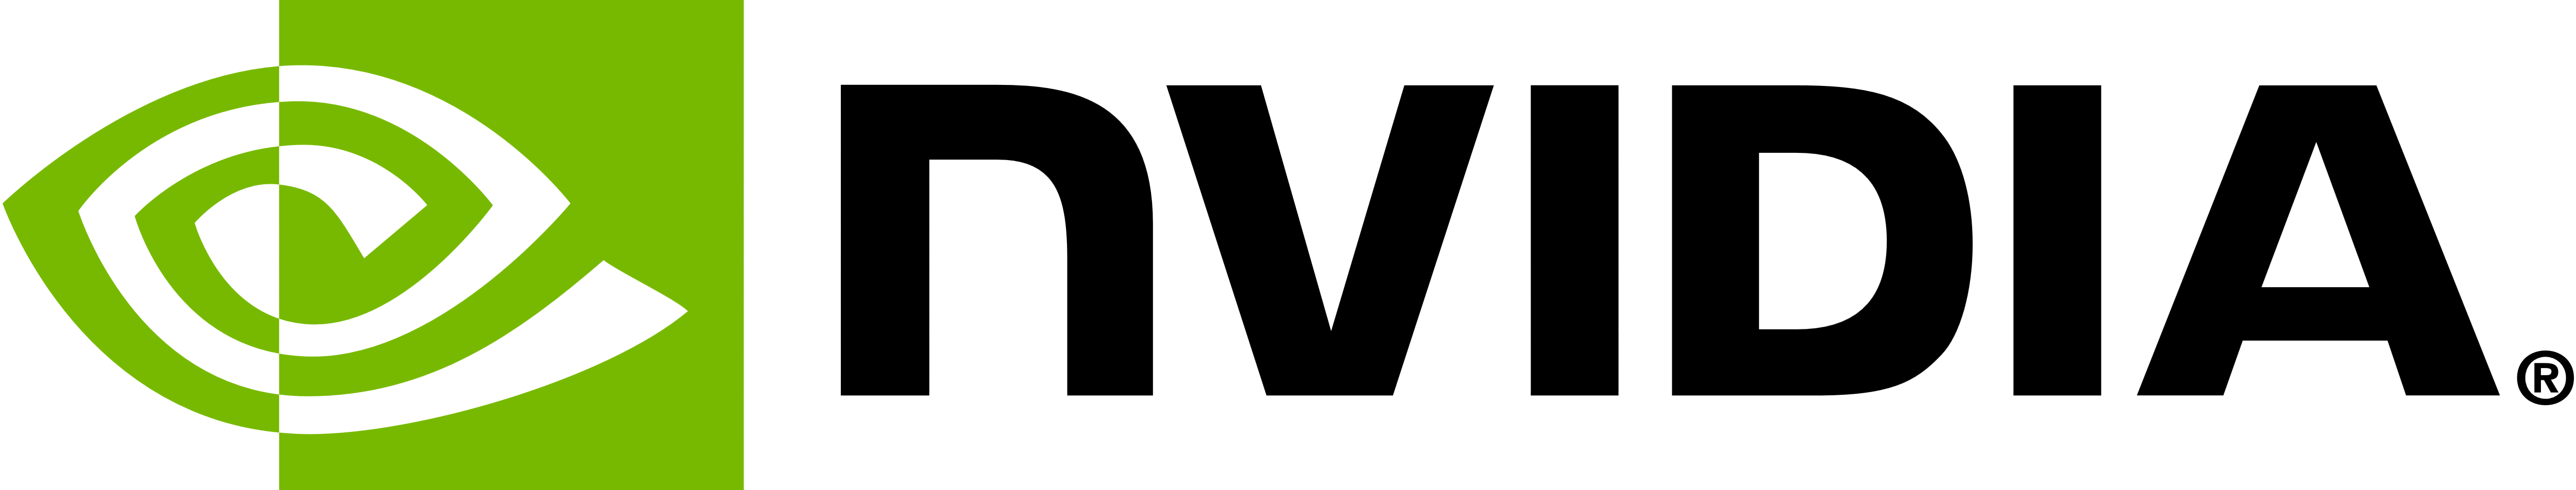 Nvidia_logo (1).png